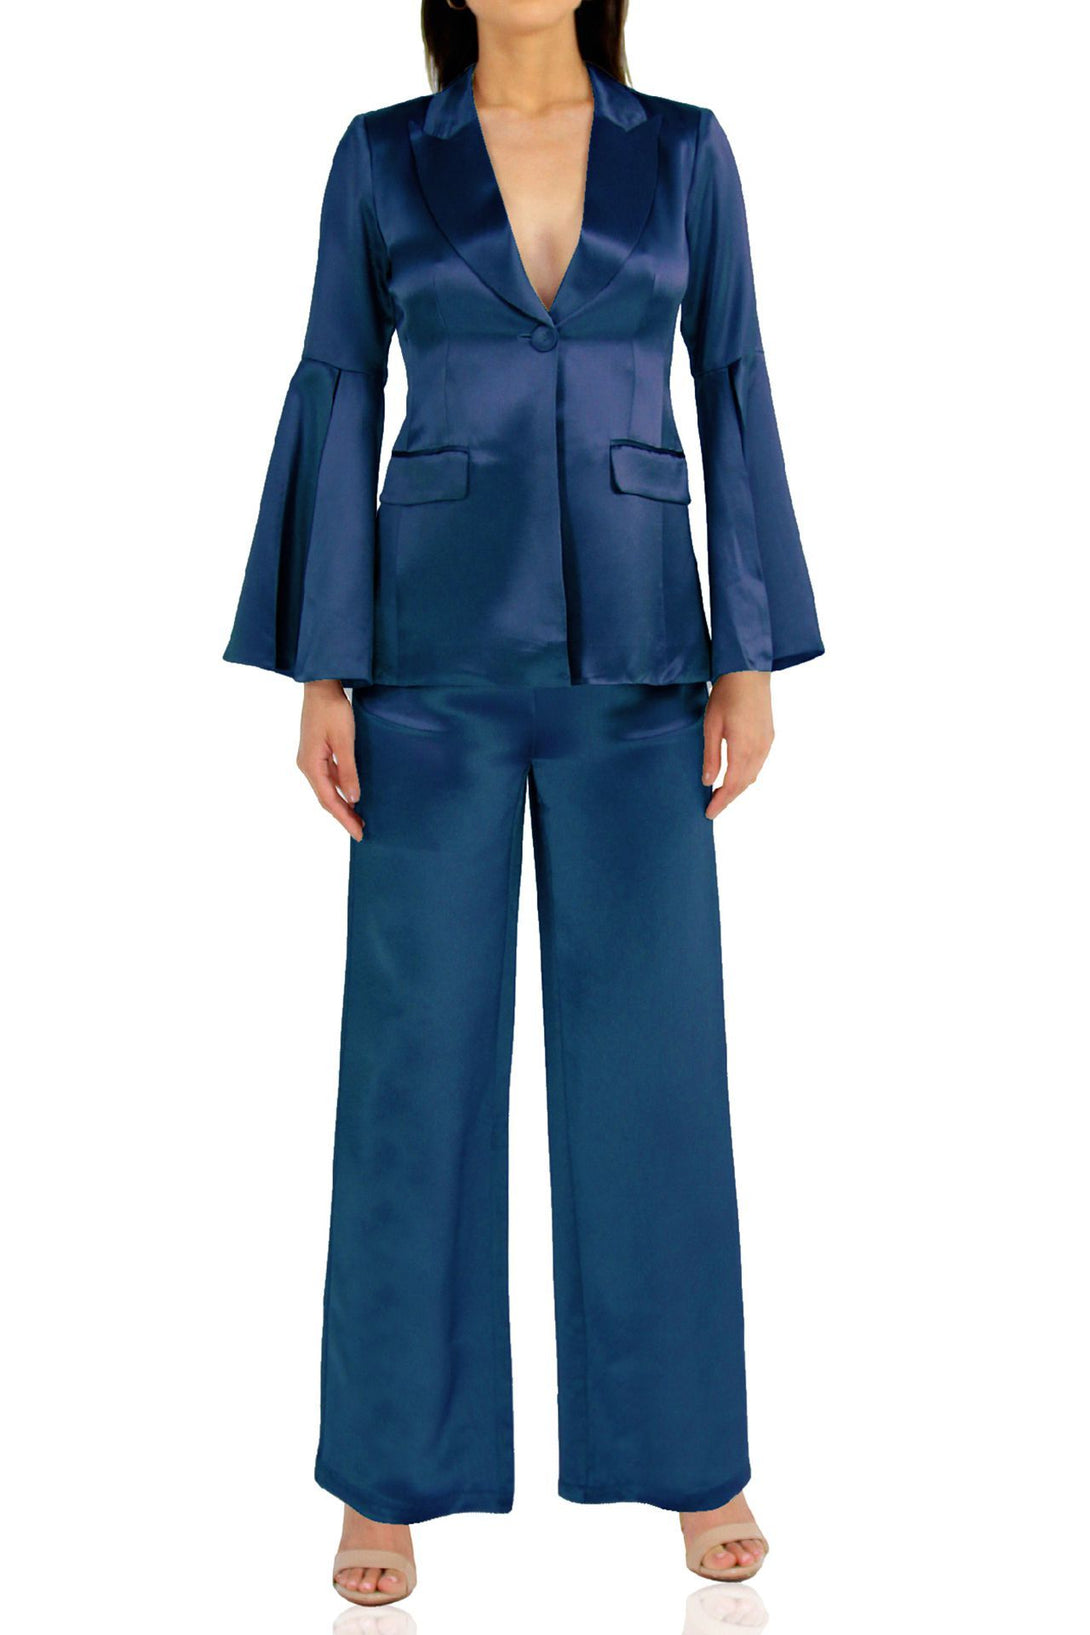 Women-Designer-Women-Blue-Suit-By-Kyle-Richards